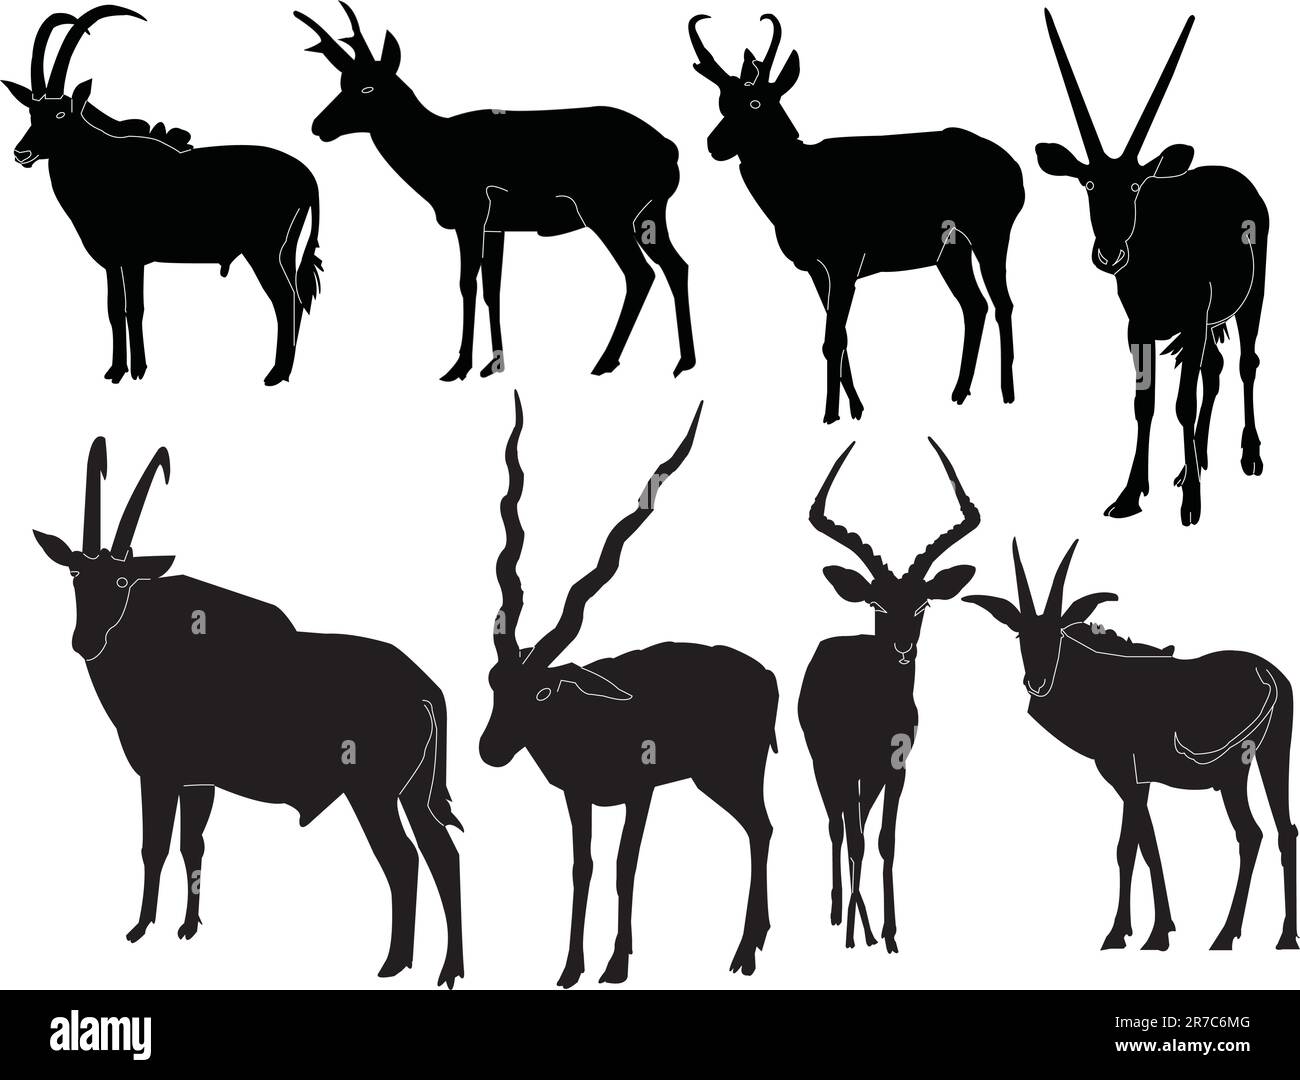 antelopes collection - vector Stock Vector